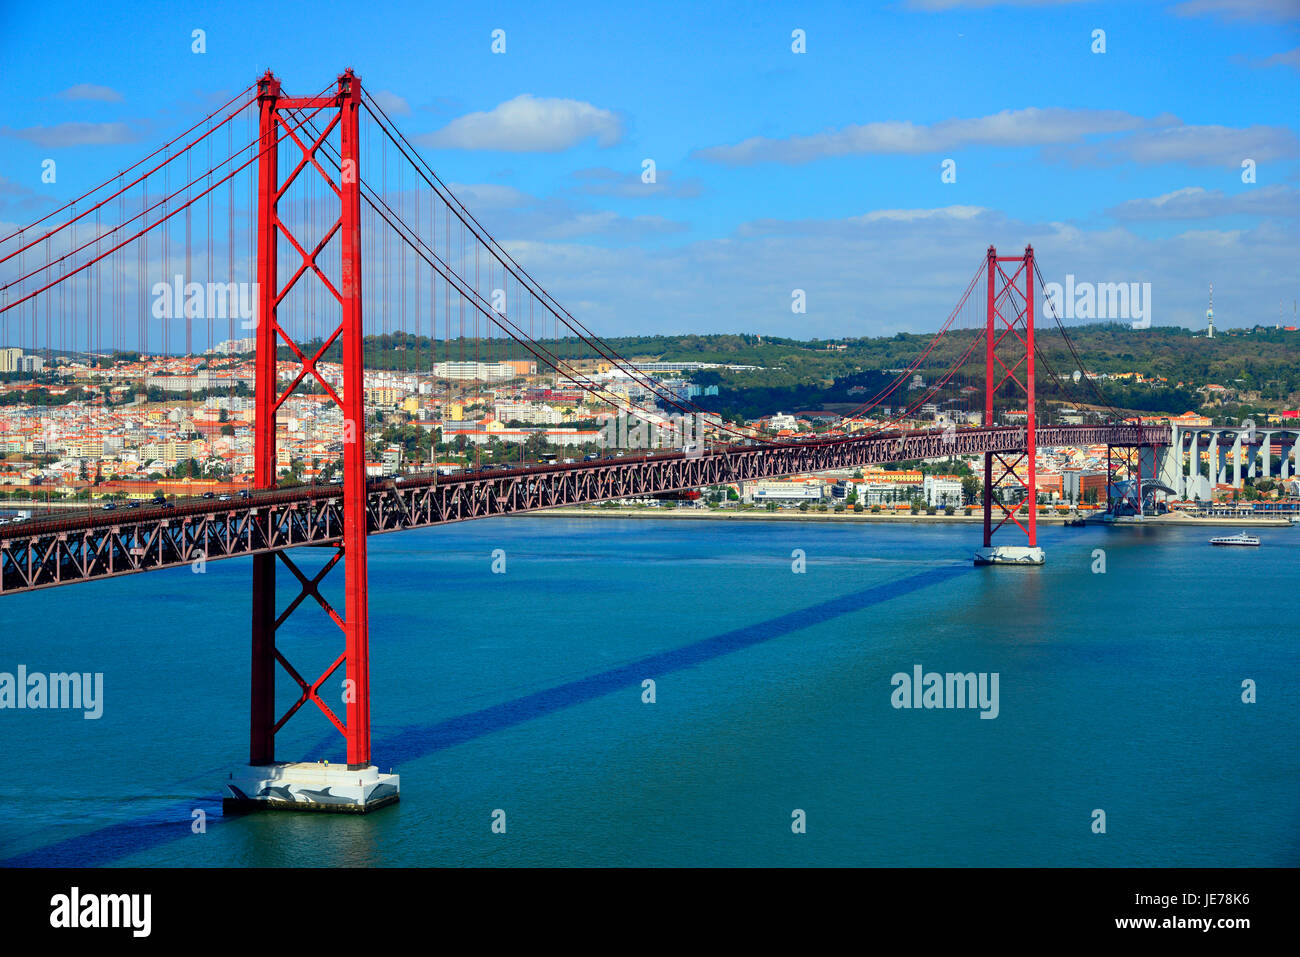 25 avril Pont sur le Tage et Lisbonne Portugal Almada eu Europe Banque D'Images